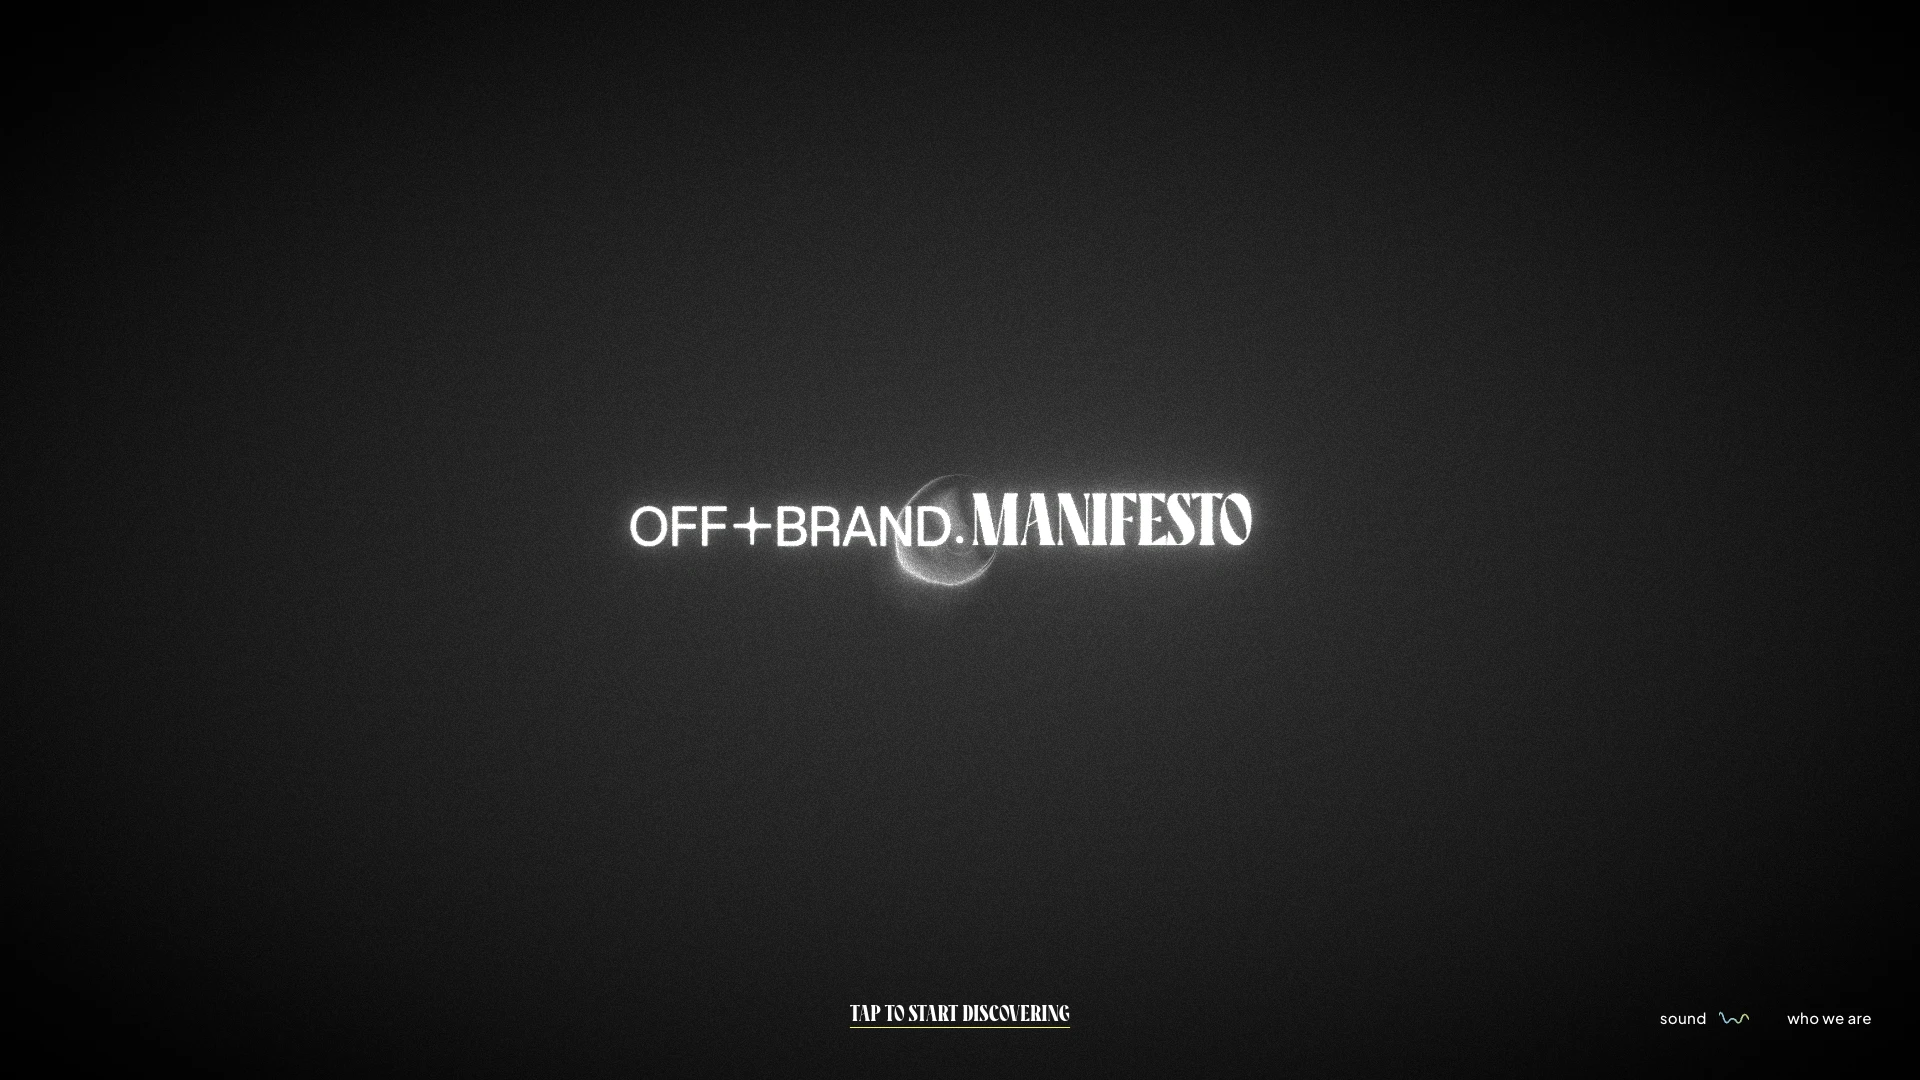 MANIFESTO by OFF+BRAND